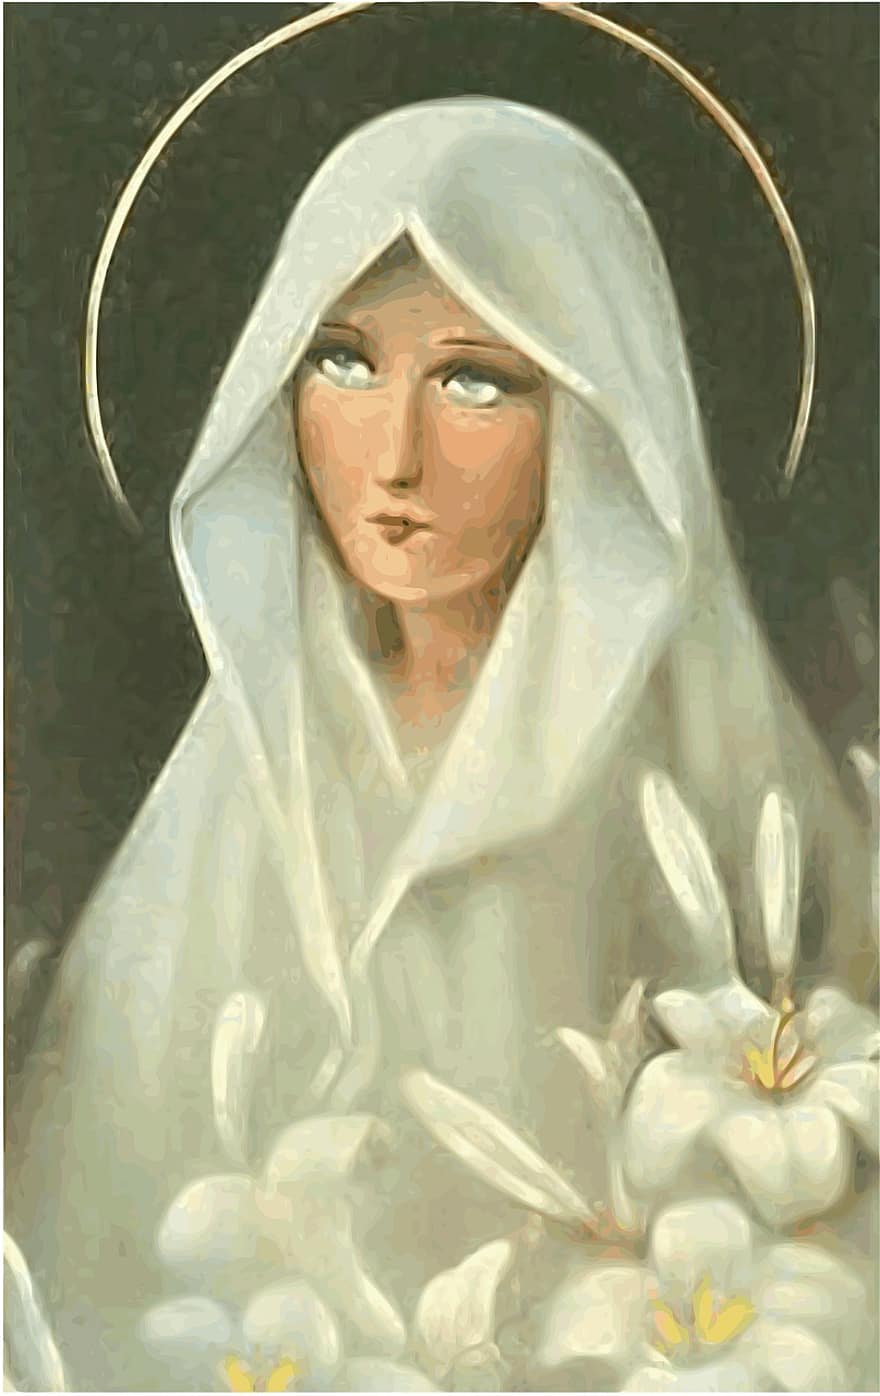 มาเรีย, ซานตา, บริสุทธิ์, ผู้หญิงของเรา, แม่ของพระเยซู, ดอกลิลลี่